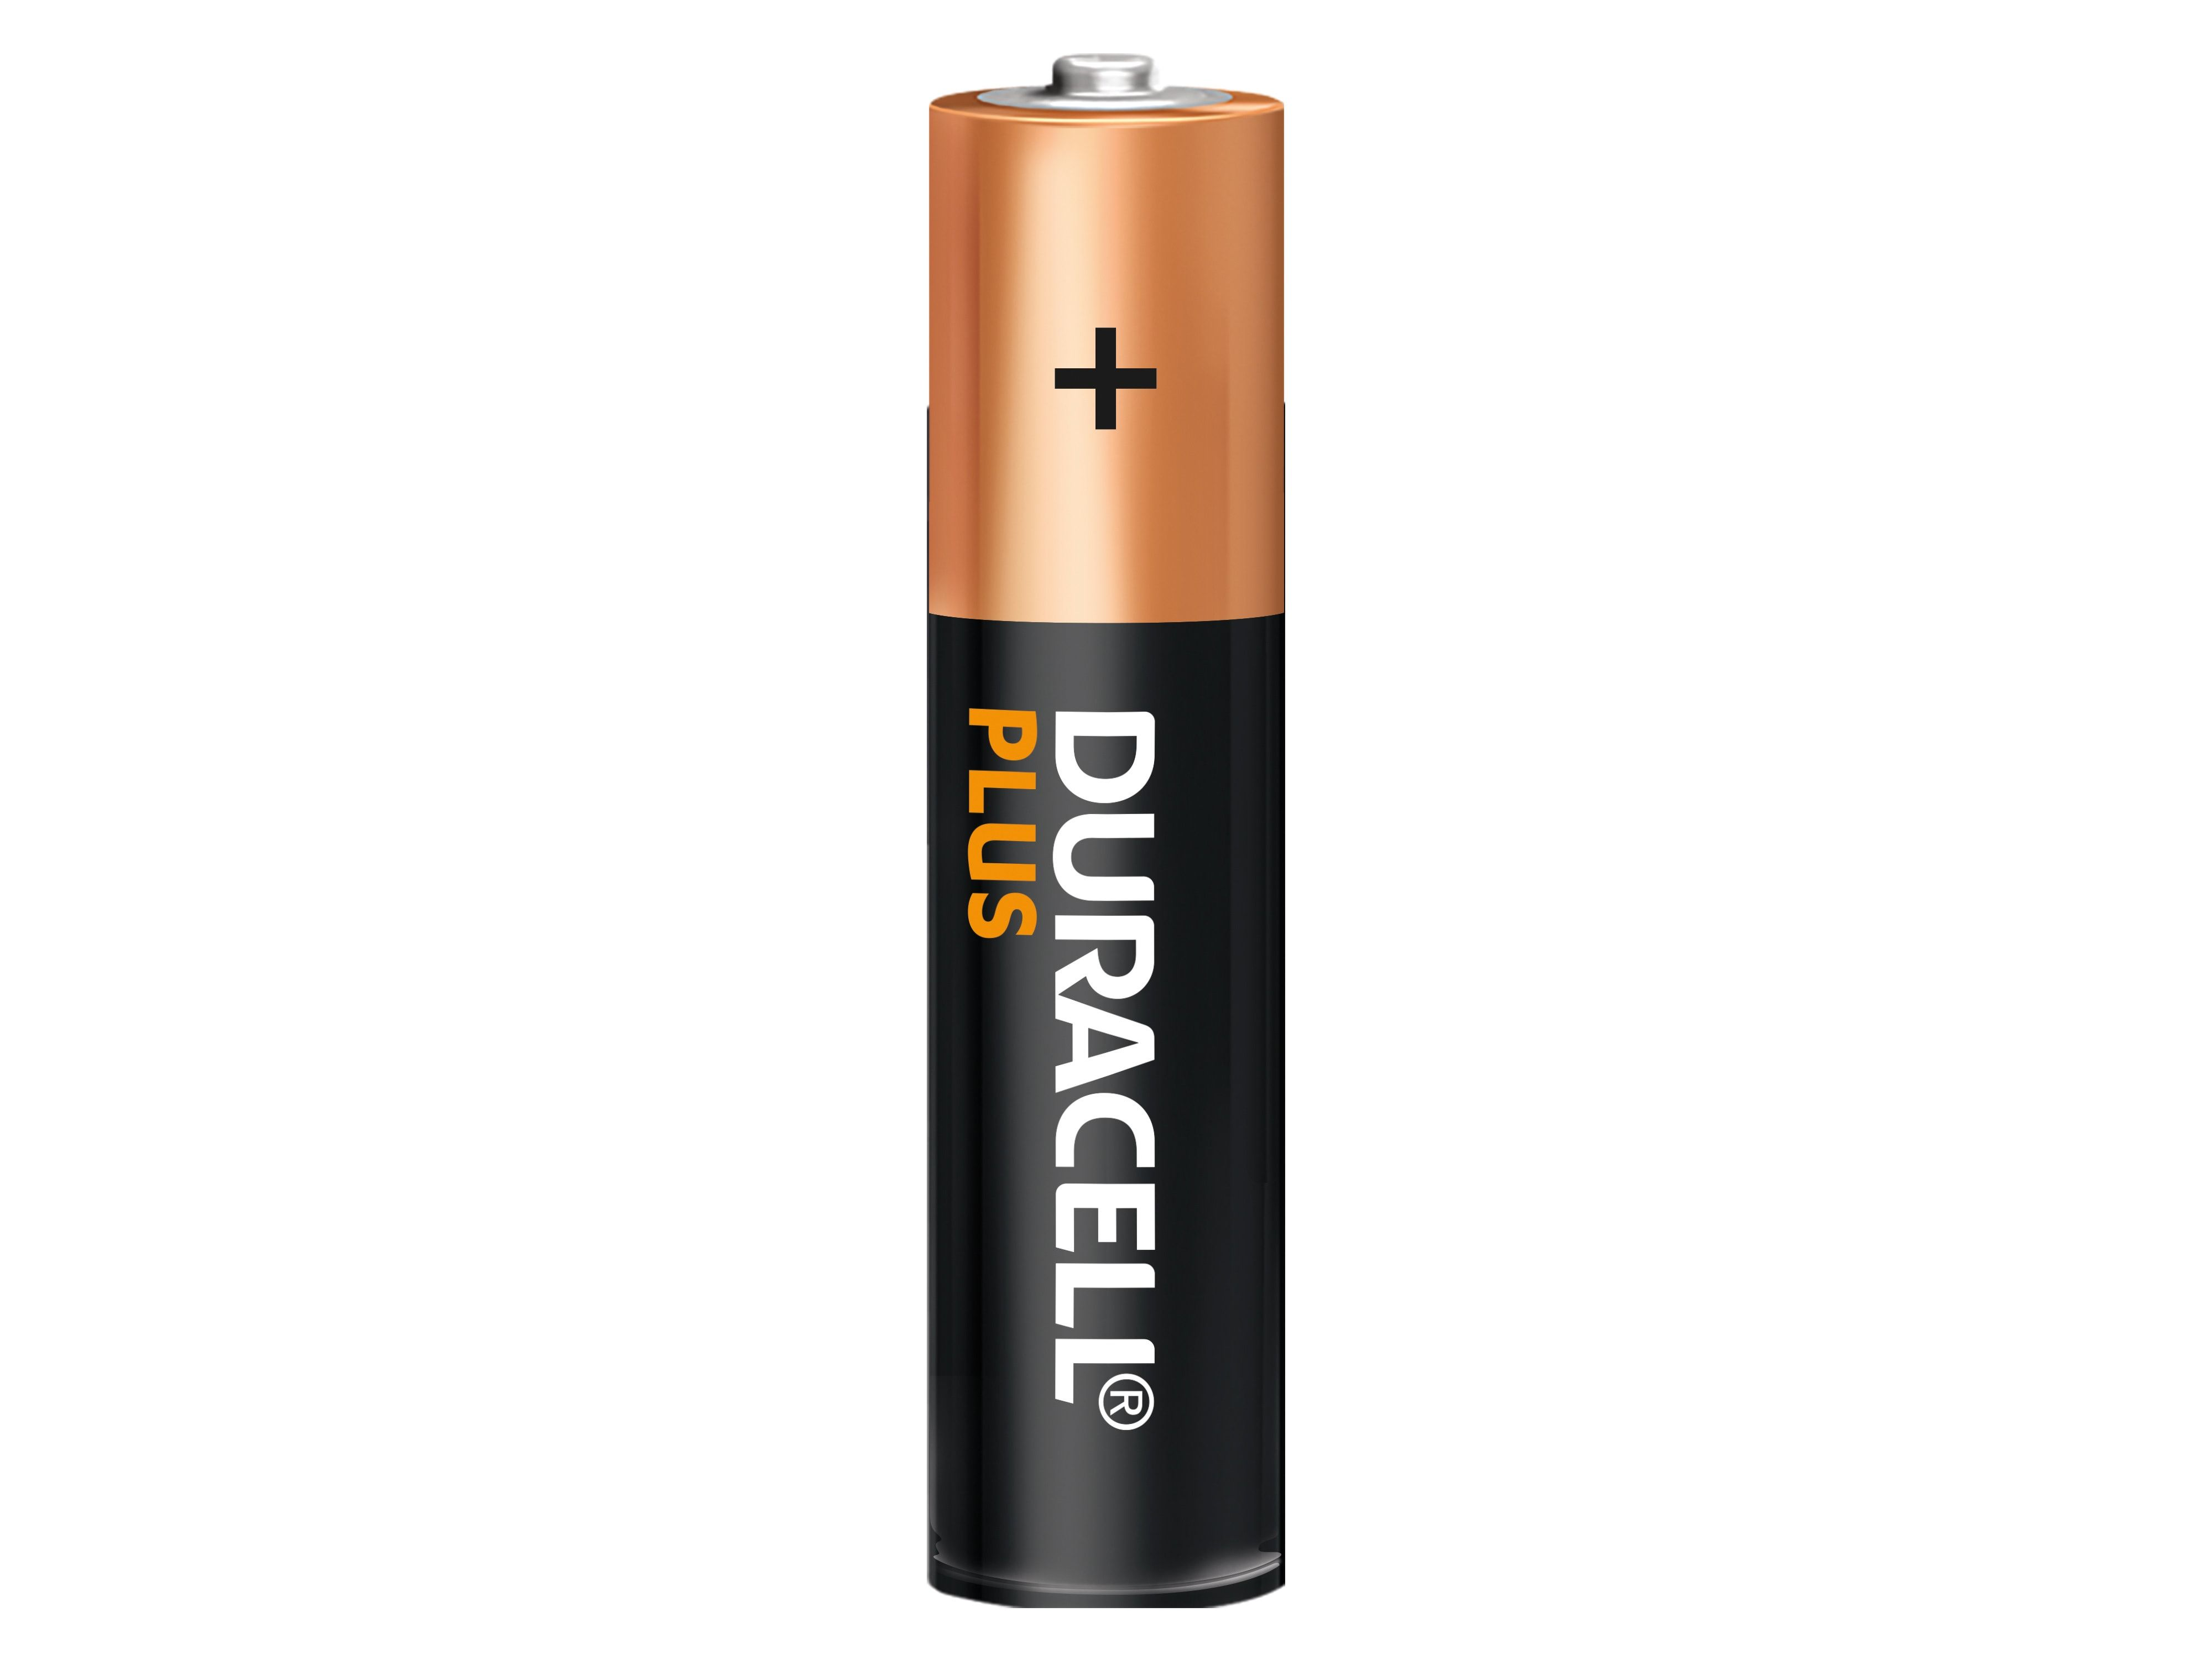 10 Batterie Stück Alkaline, Batterie, DURACELL Volt Life, 10 Plus, Stück 1,5V, 1.5 Extra Micro, Alkaline AAA, LR03,